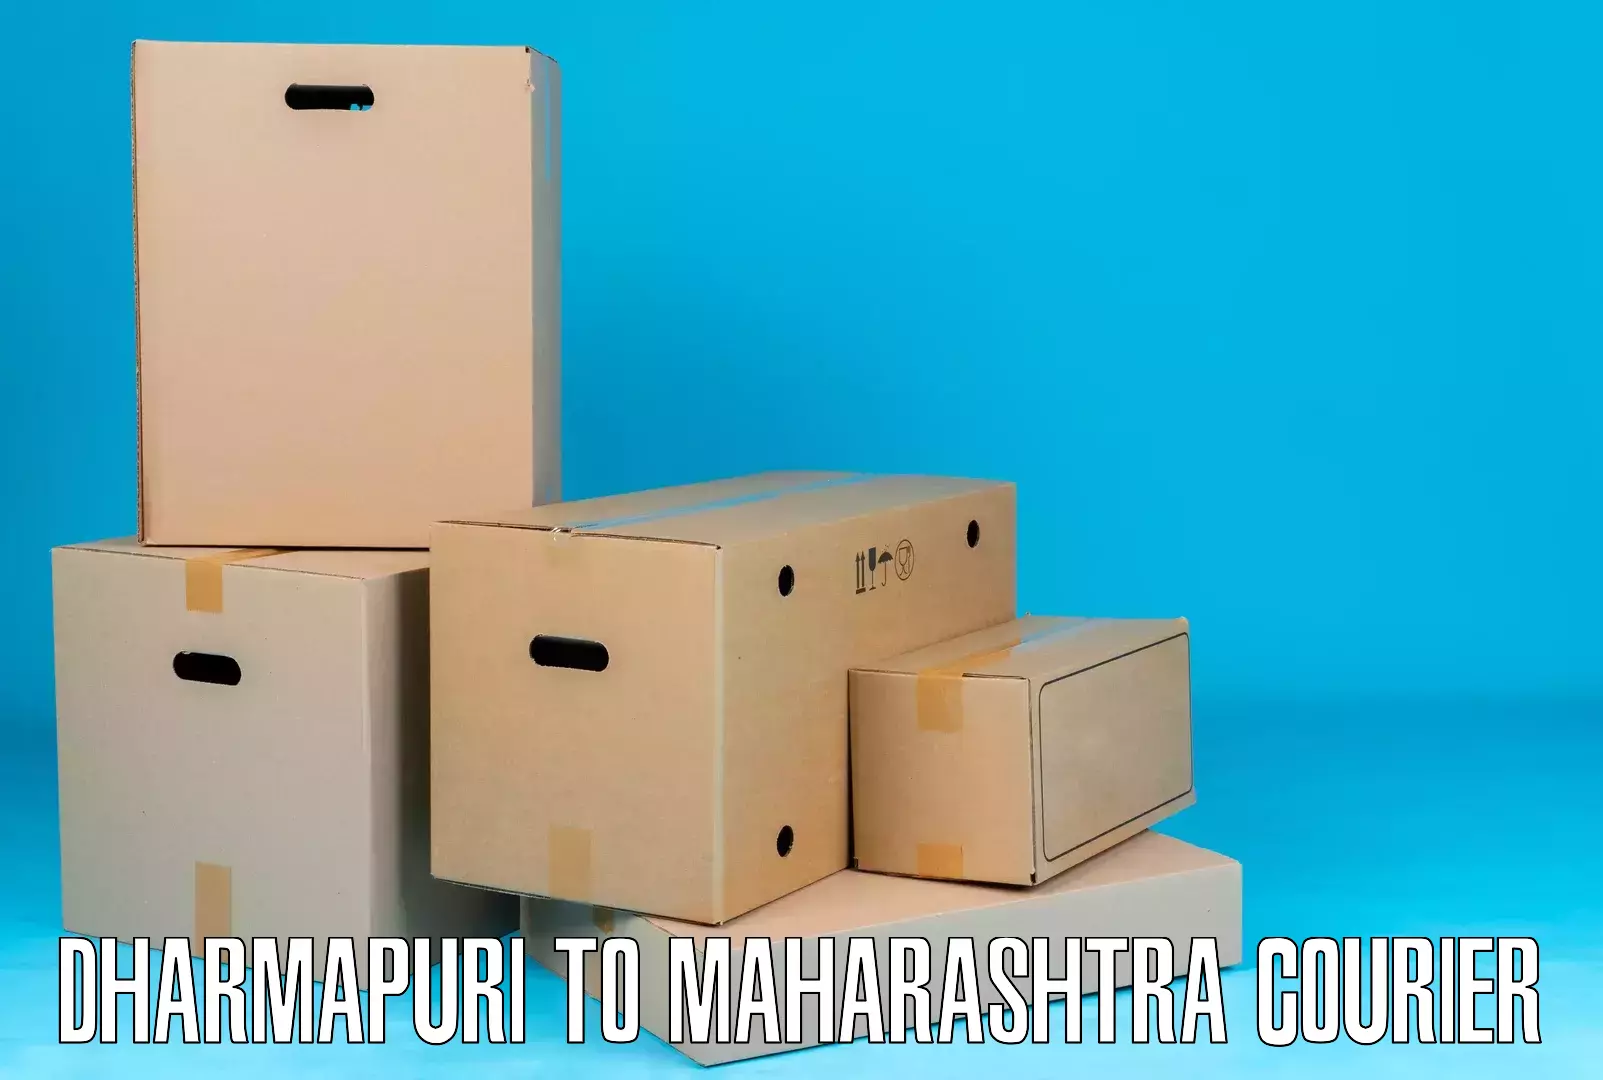 Efficient freight service Dharmapuri to Akkalkot